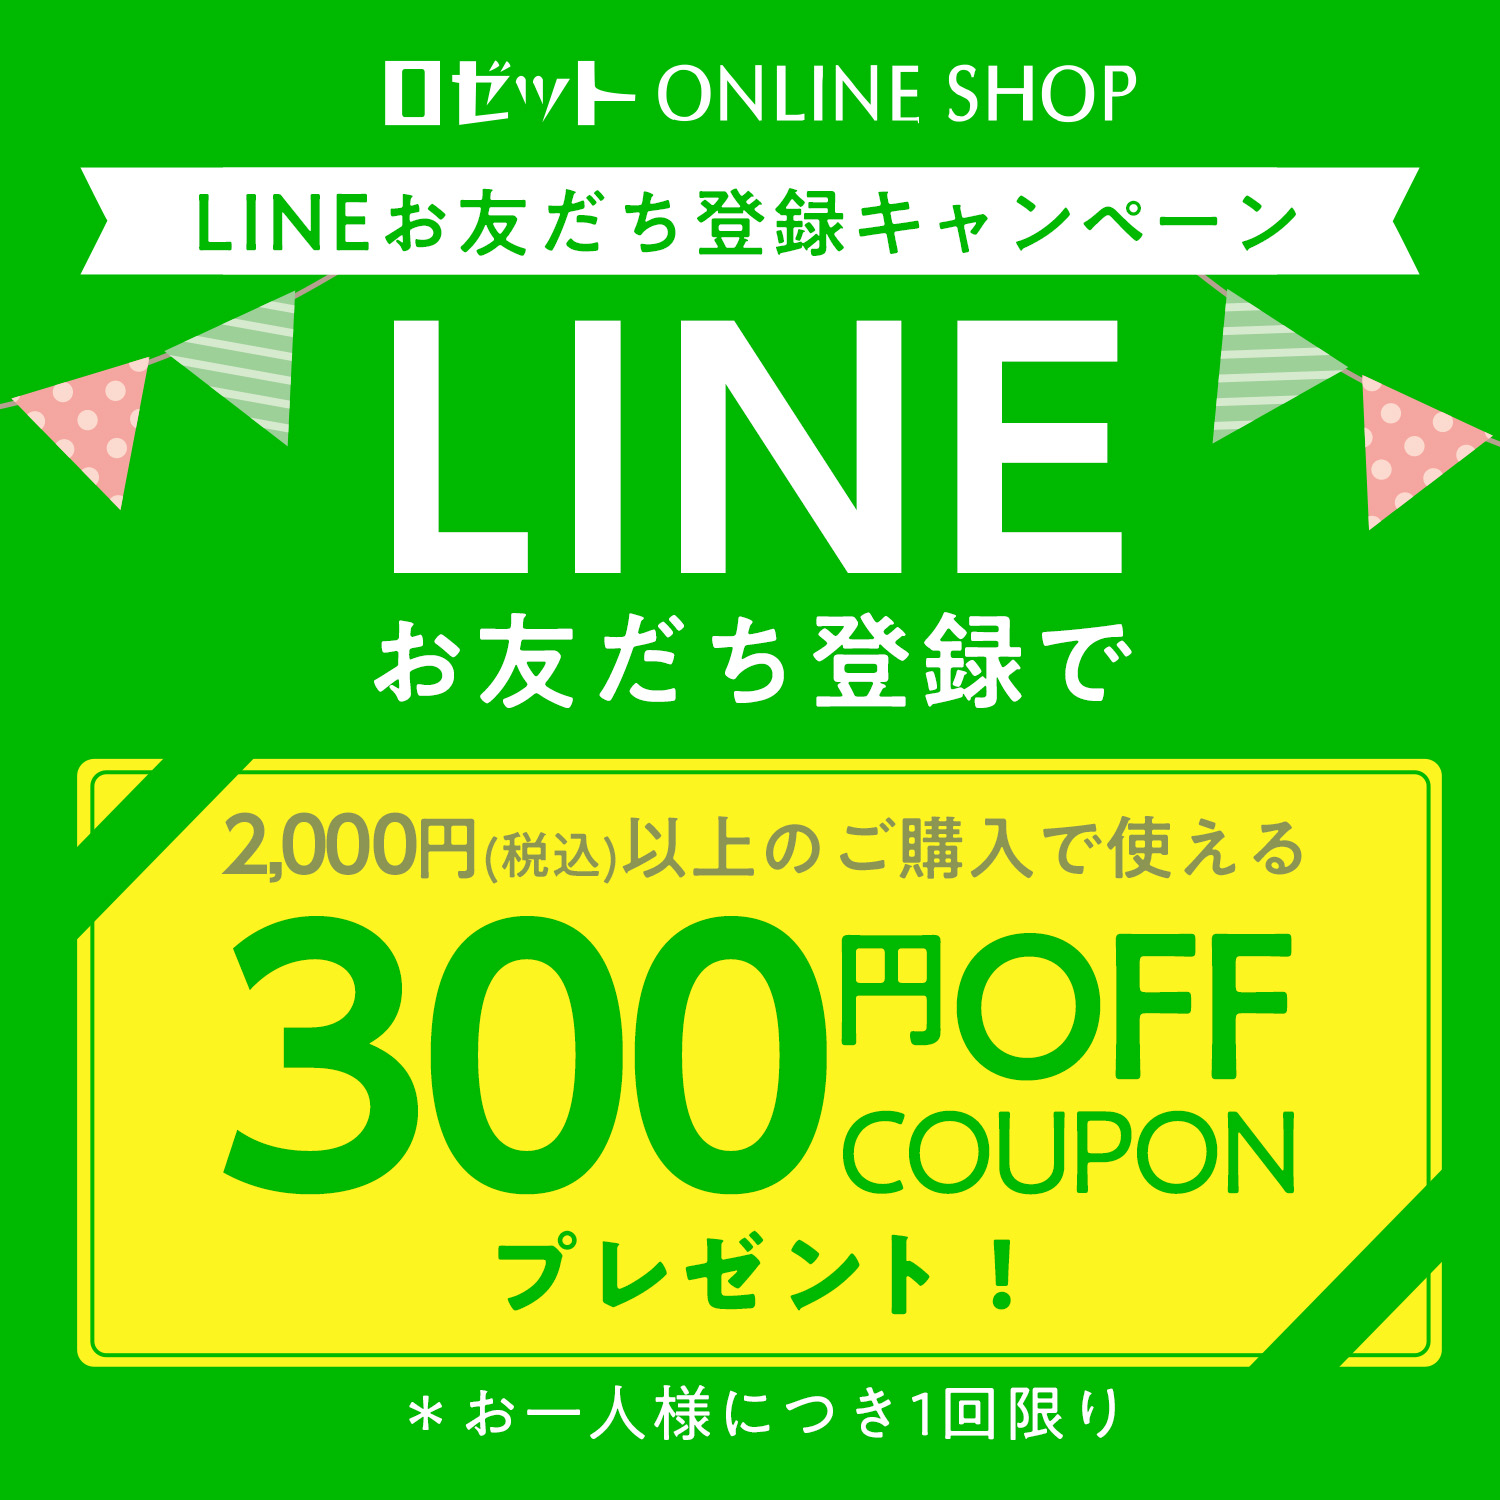 ロゼットLINE公式 LINEお友だち登録で300円OFFクーポンプレゼント